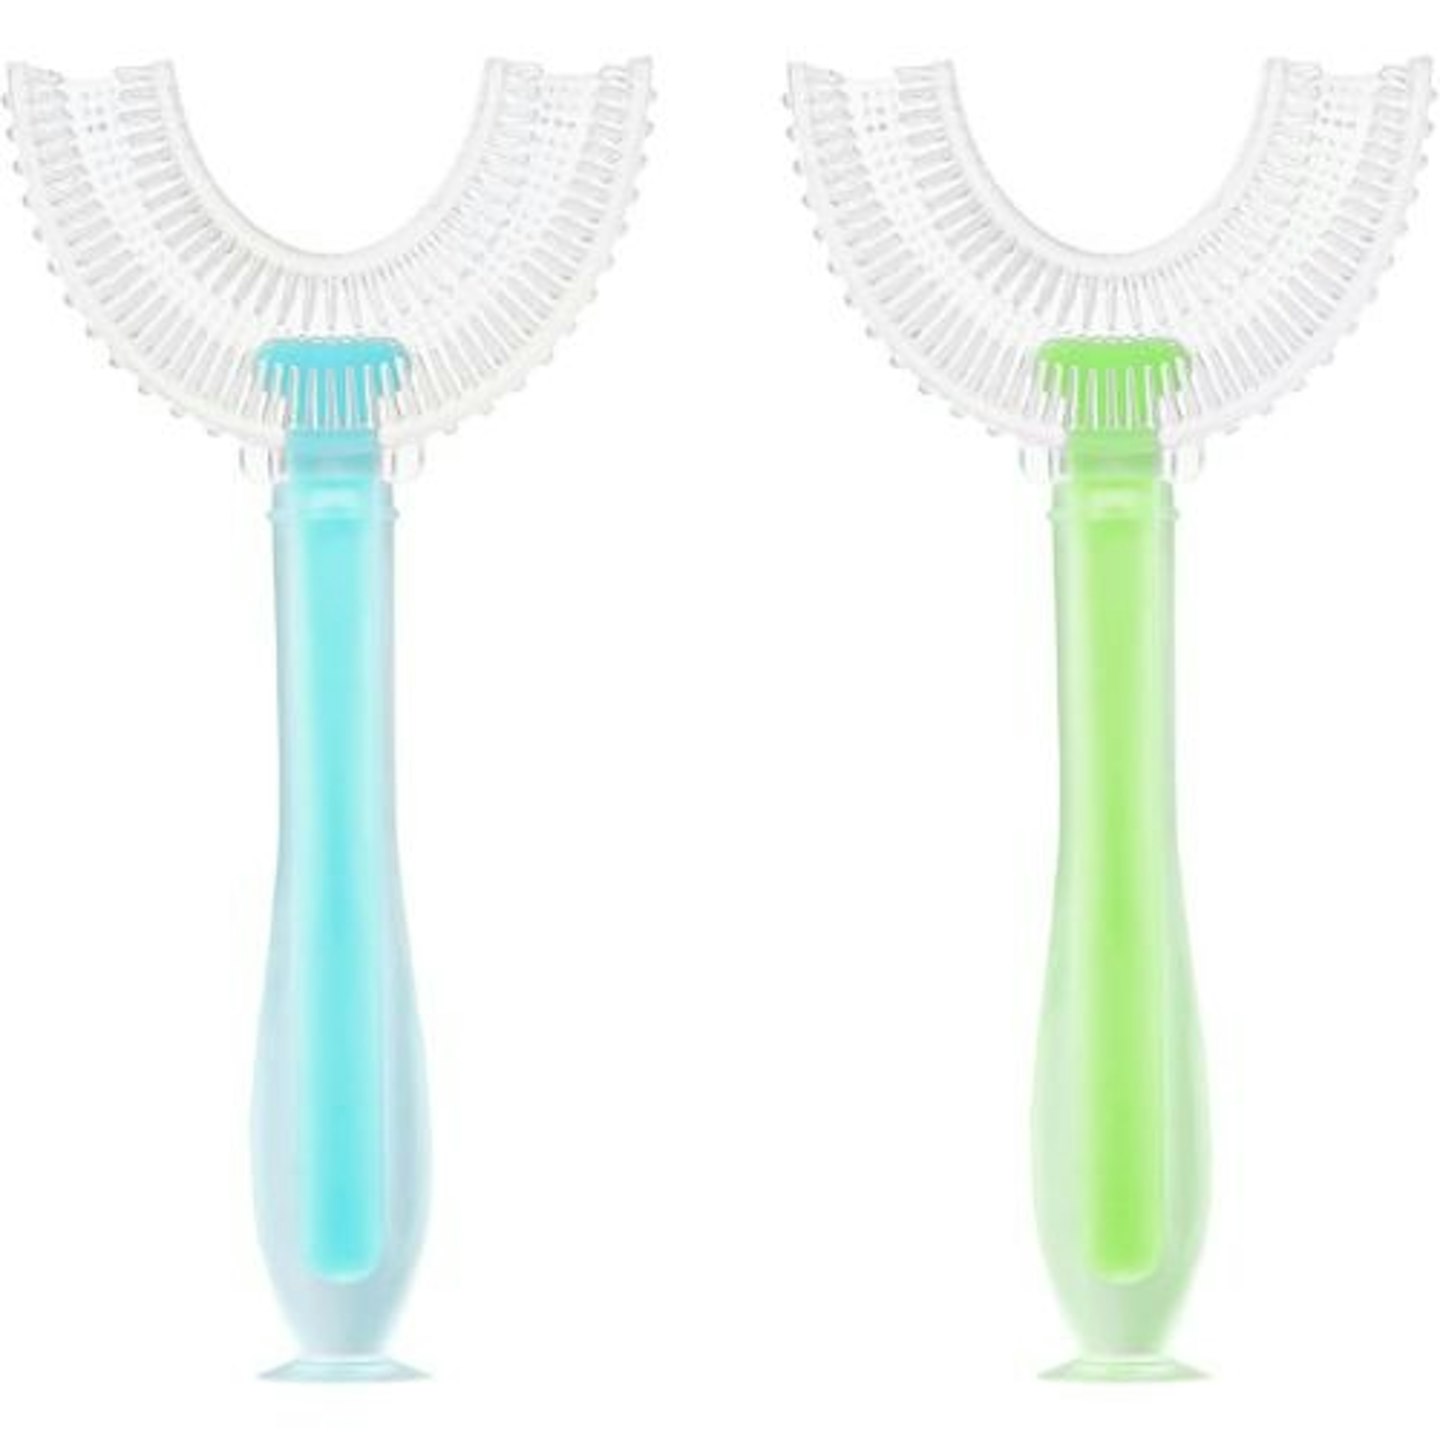 Best U-shaped toothbrush Vicloon U Shaped Toothbrush